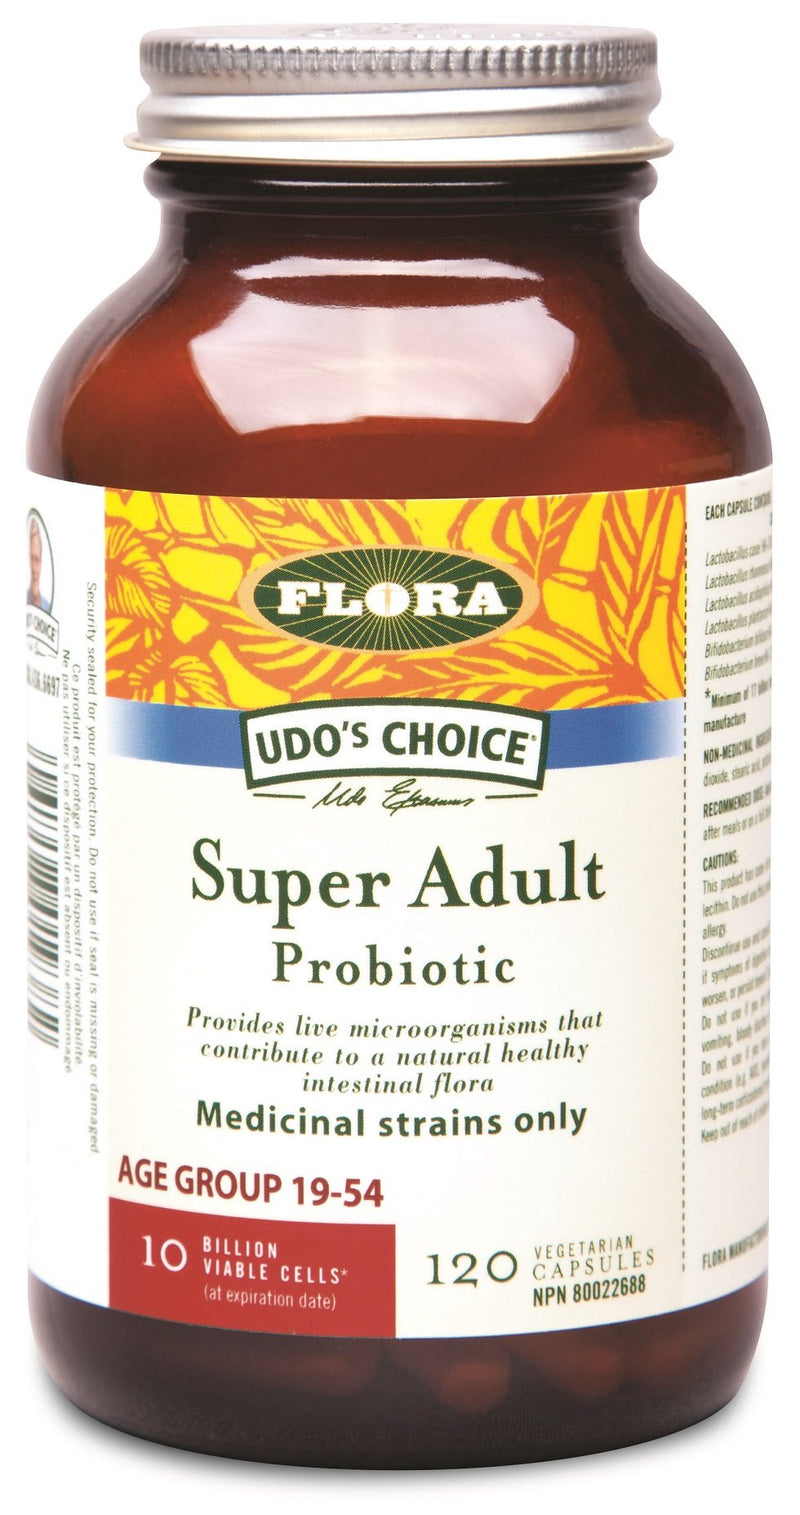 Flora Super Adult Probiotic 10 Billion Viable Cells 120 VCaps Image 1